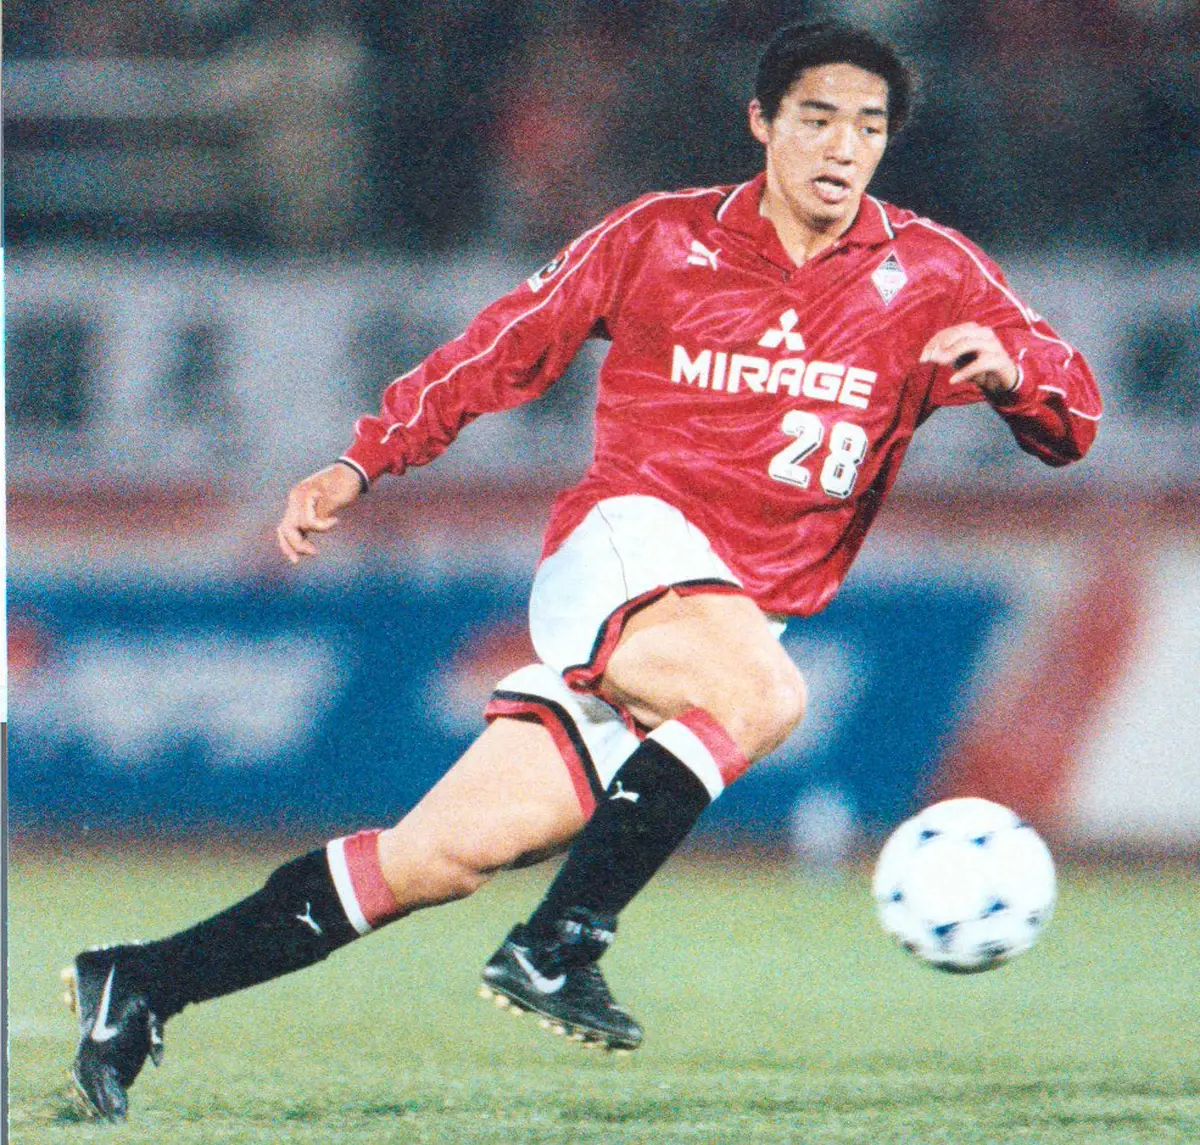 【小野伸二引退】古巣・浦和が愛のある投稿「足が走ろうと言ったら、また一緒にサッカーしましょう」